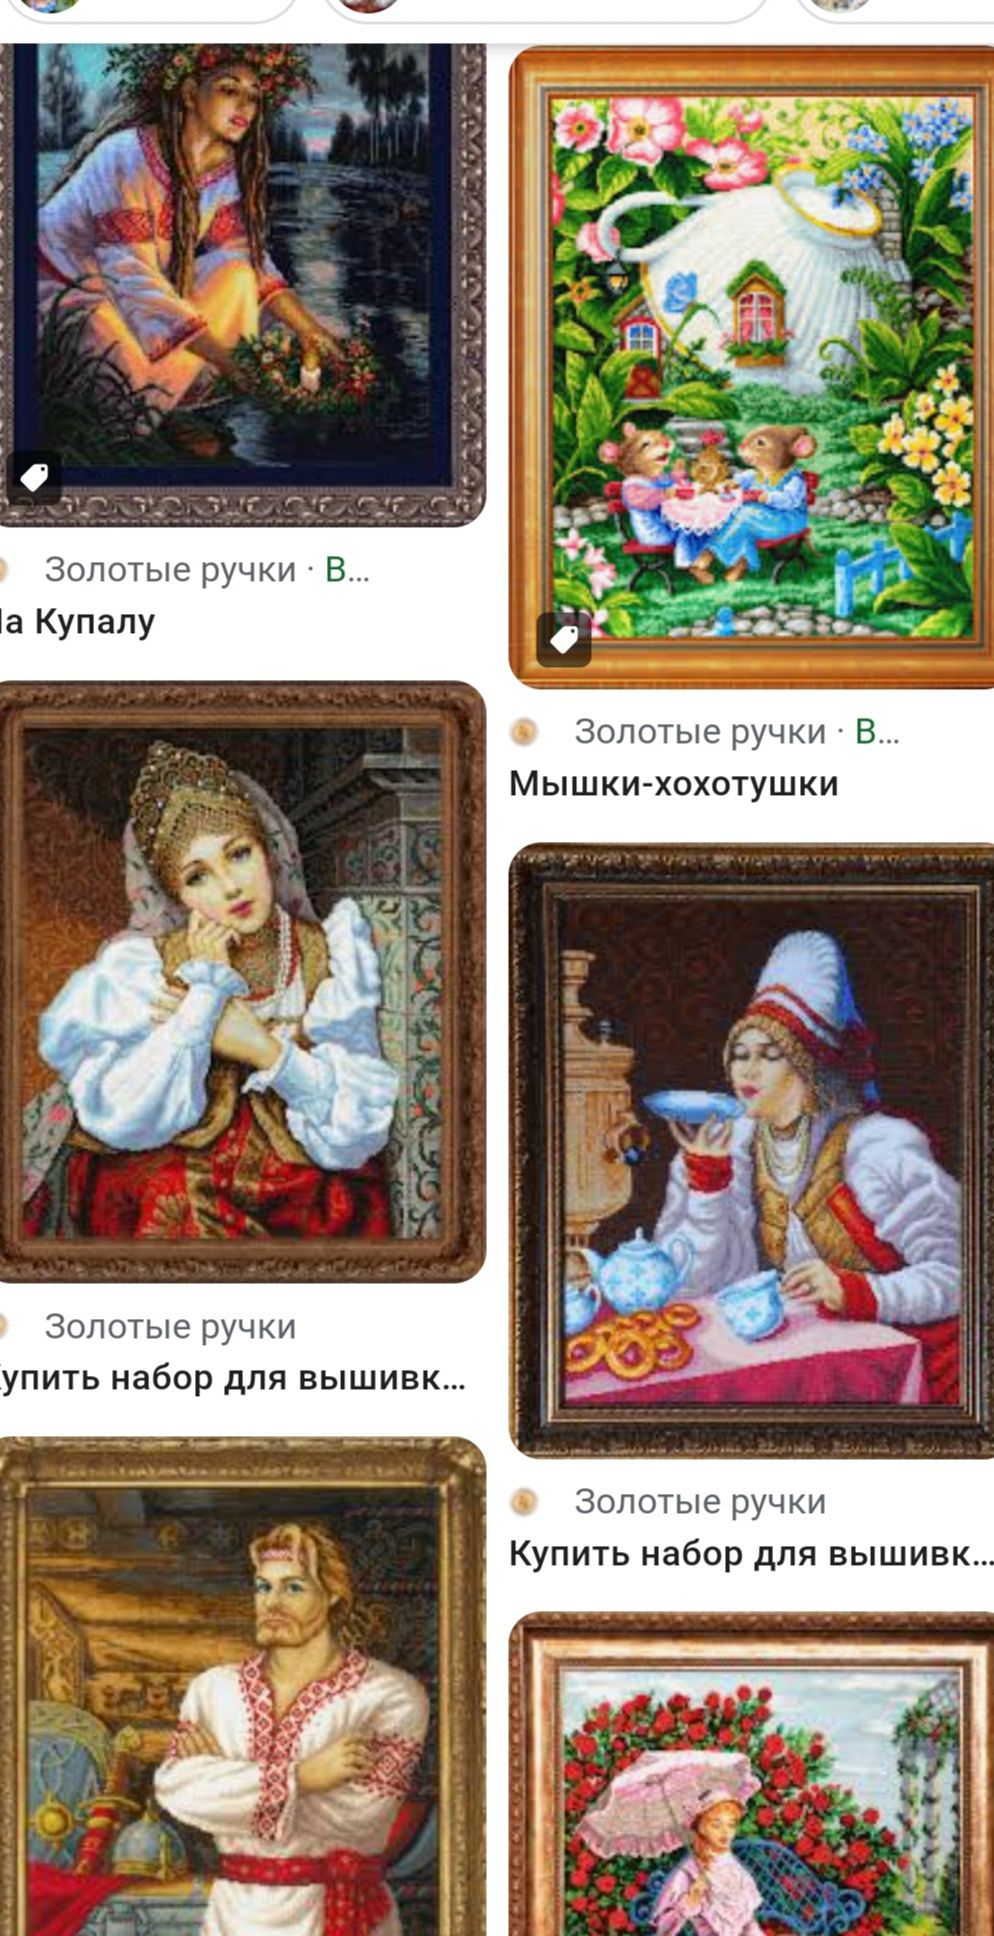 ОЧЕНЬ РЕДКИЕ наборы для вышивания бисером в Украине !
ПРОДАЮ В СВЯЗИ С